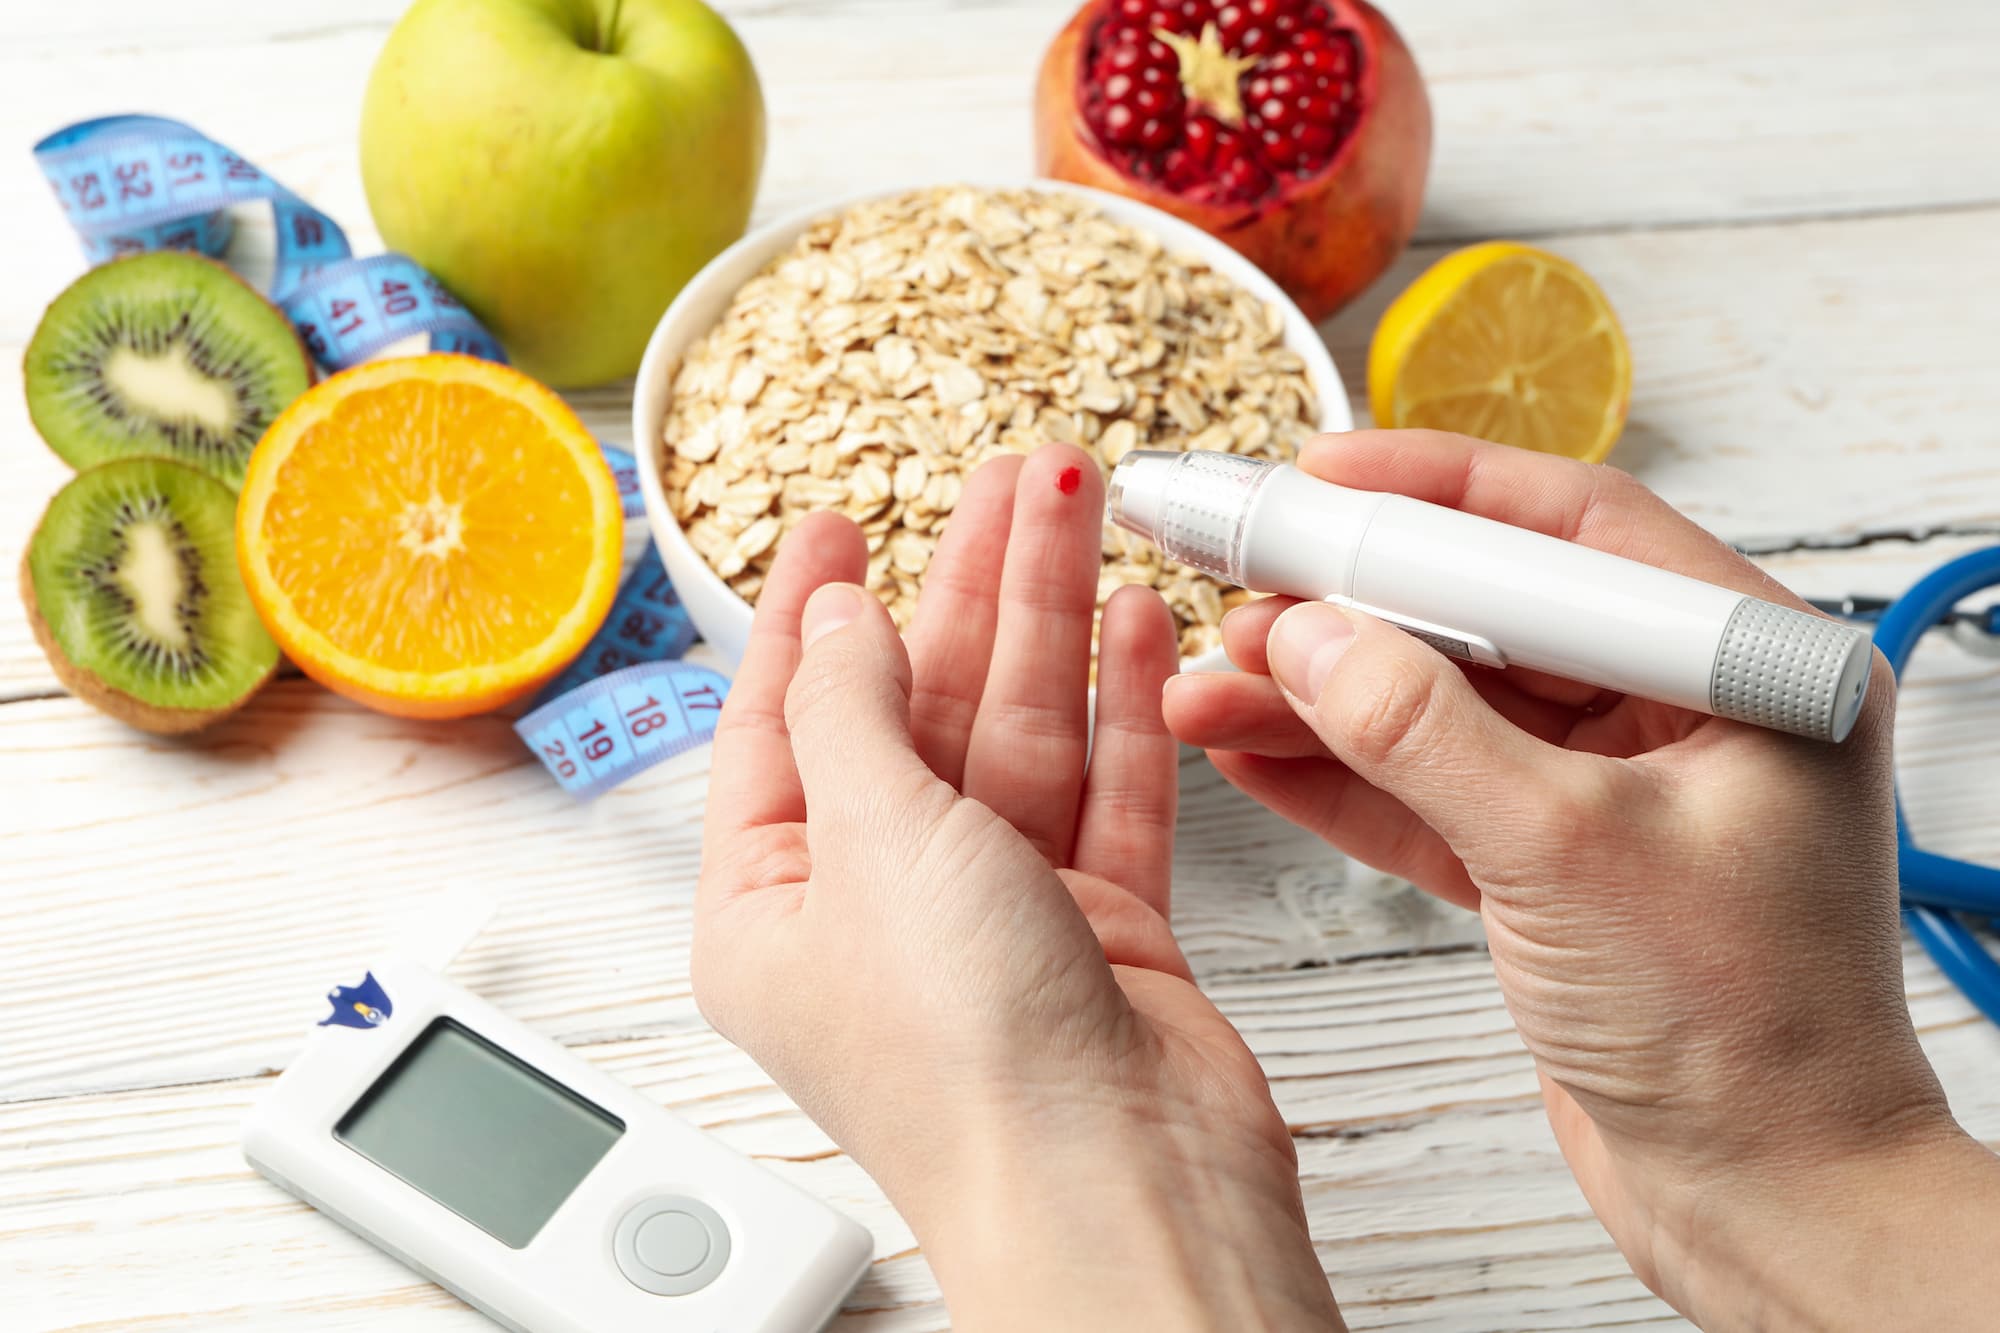 Diabetes mellitus Typ 2, Messung des Blutzuckerwertes, gesunde Ernährung